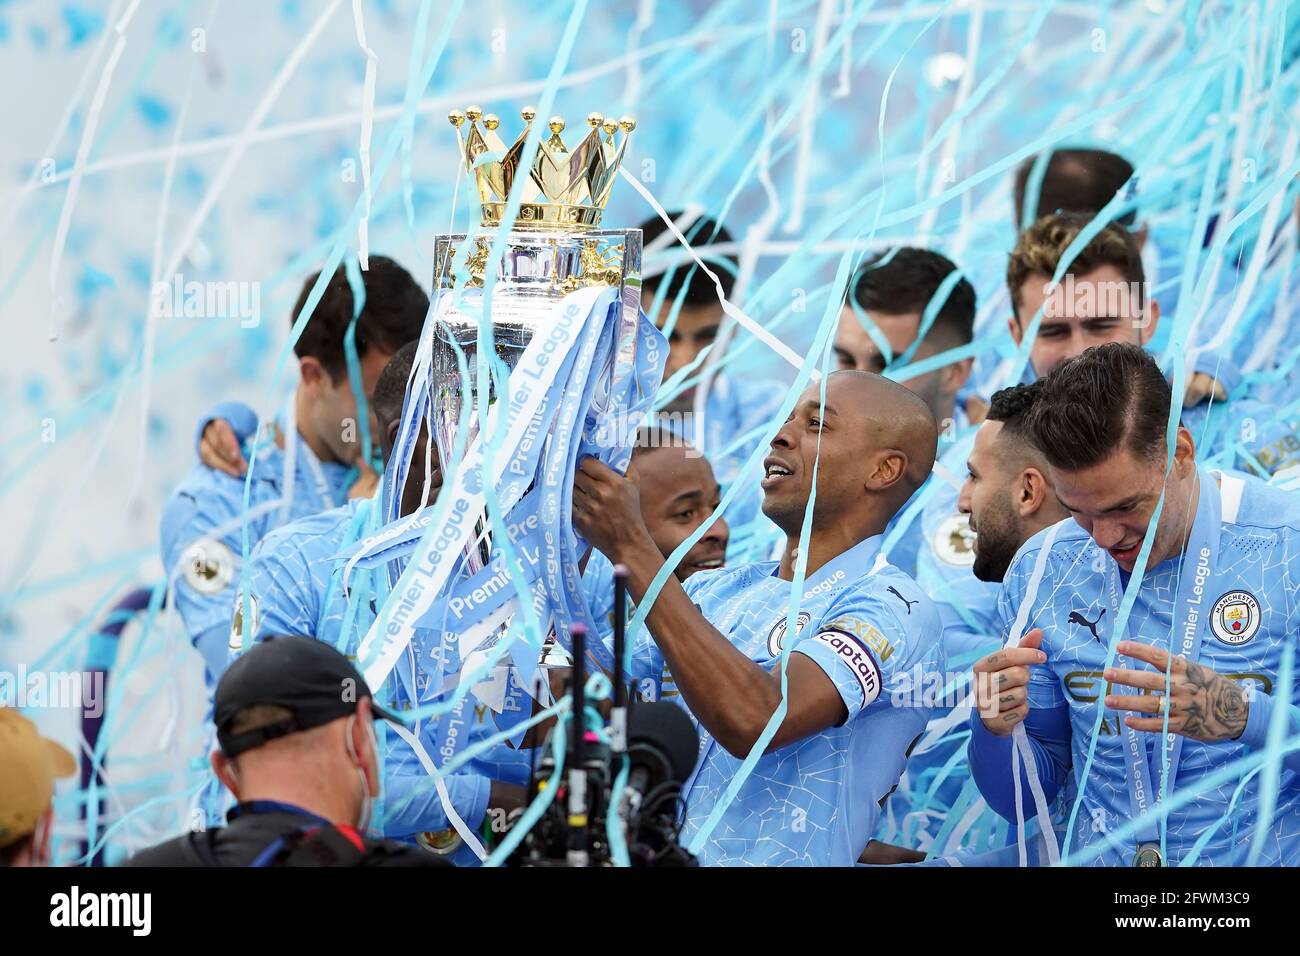 Fernandinho (centro) di Manchester City solleva il trofeo della Premier League con i compagni di squadra dopo il fischio finale nella partita della Premier League all'Etihad Stadium di Manchester. Data immagine: Domenica 23 maggio 2021. Foto Stock